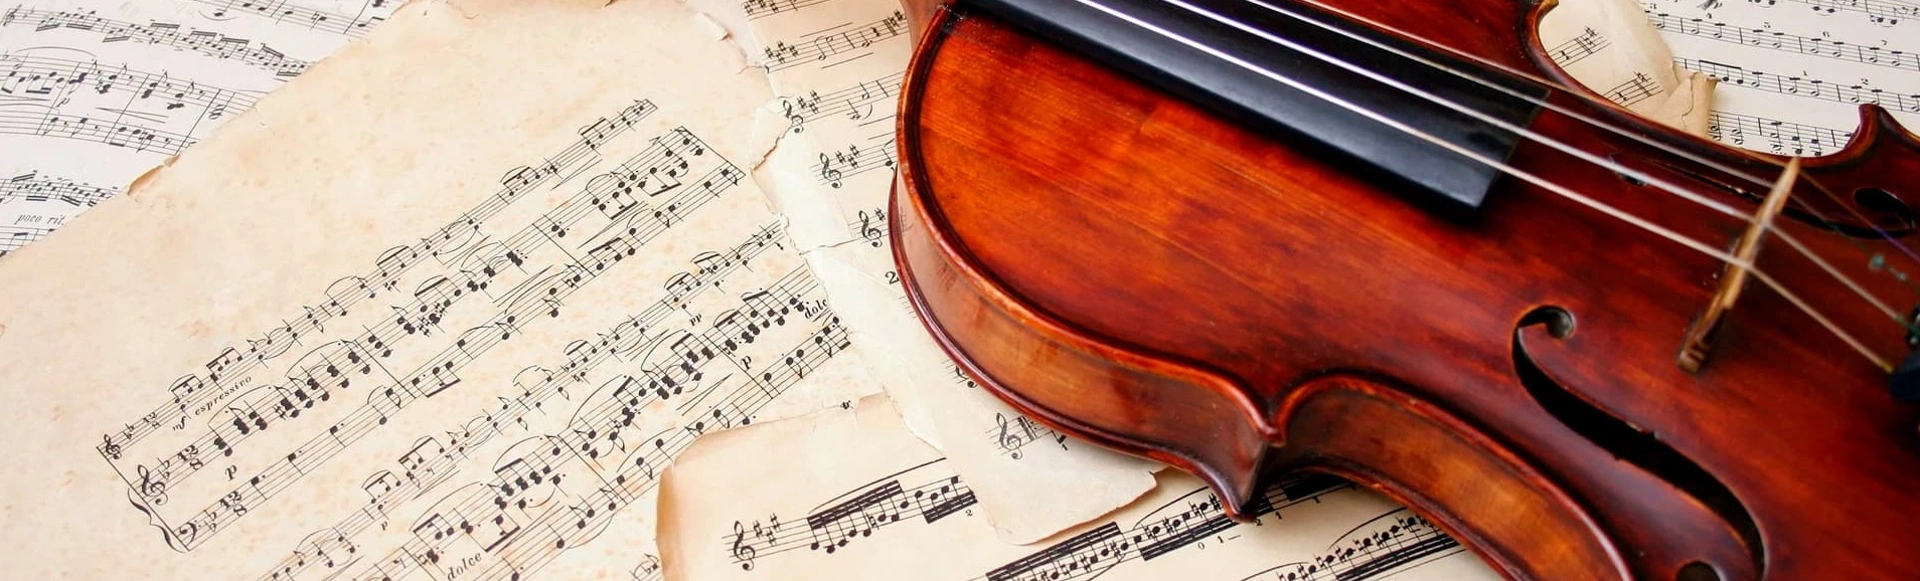 Моцарт: «Музыка – это тишина, живущая между звуками»